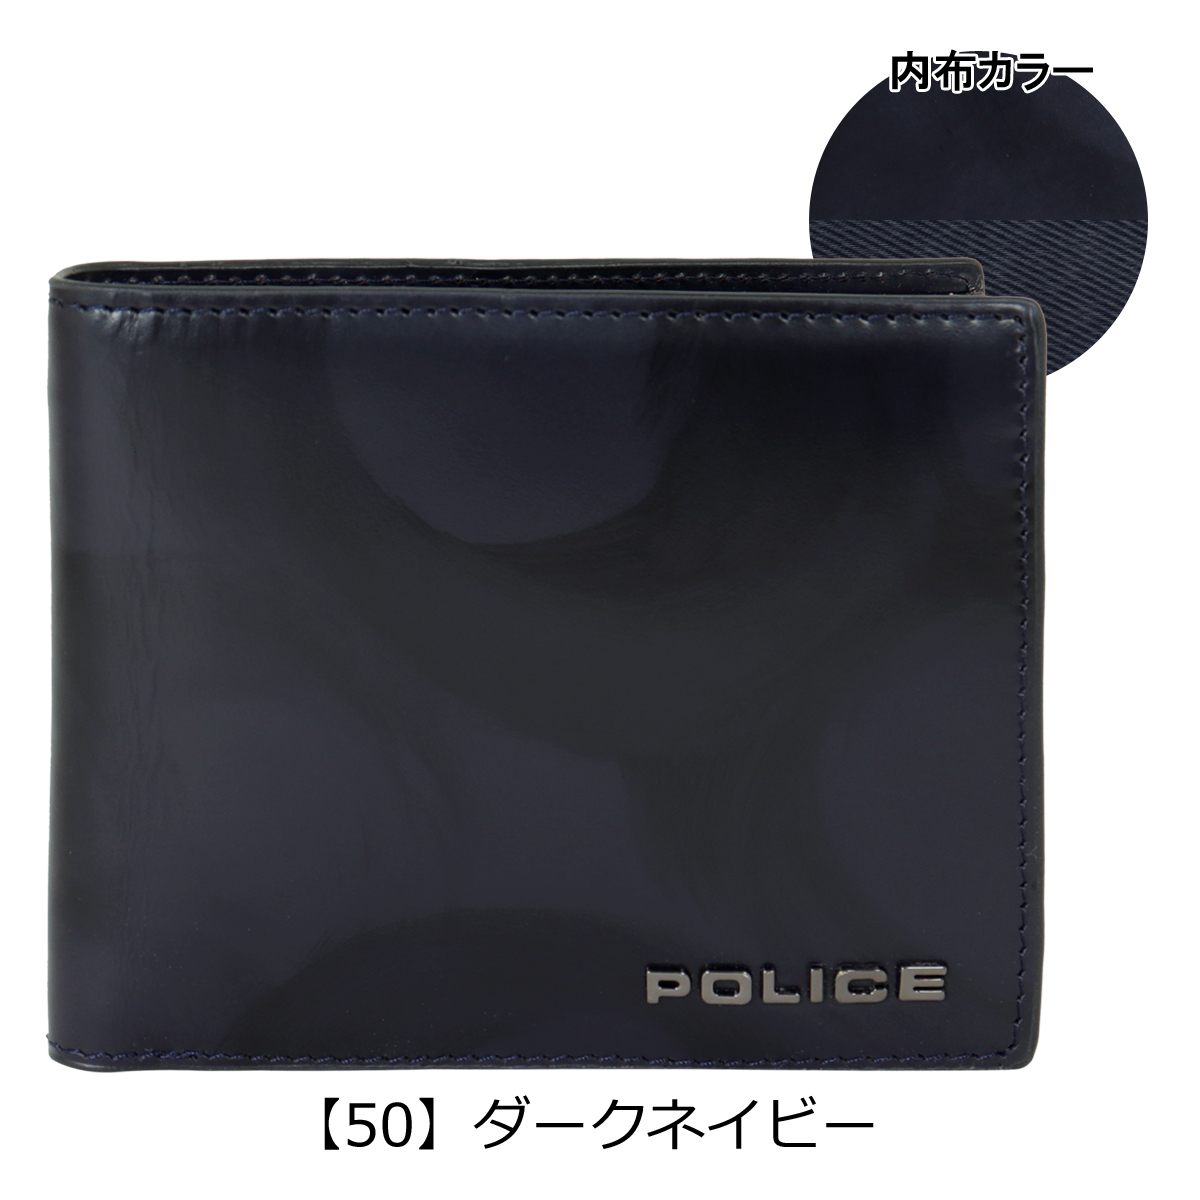 ポリス PA-59901-50 [BICOLORE 二つ折り財布] - abs-chiro.com